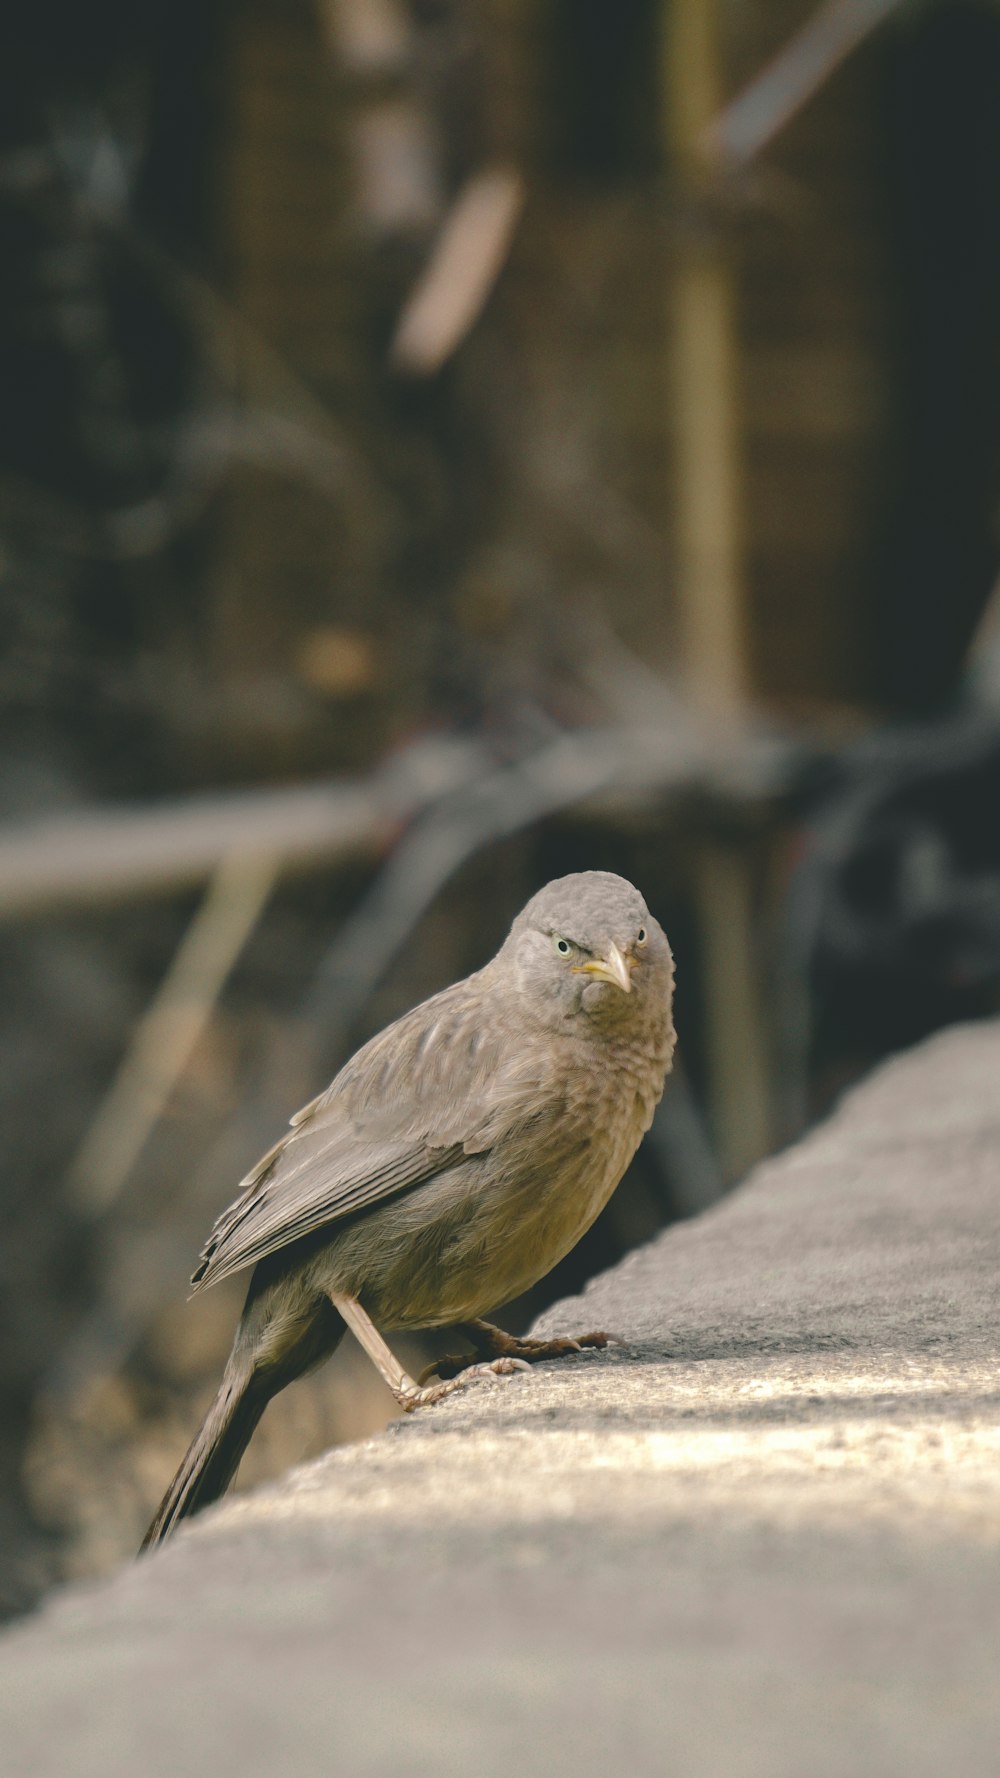 Un pequeño pájaro sentado en el borde de un edificio